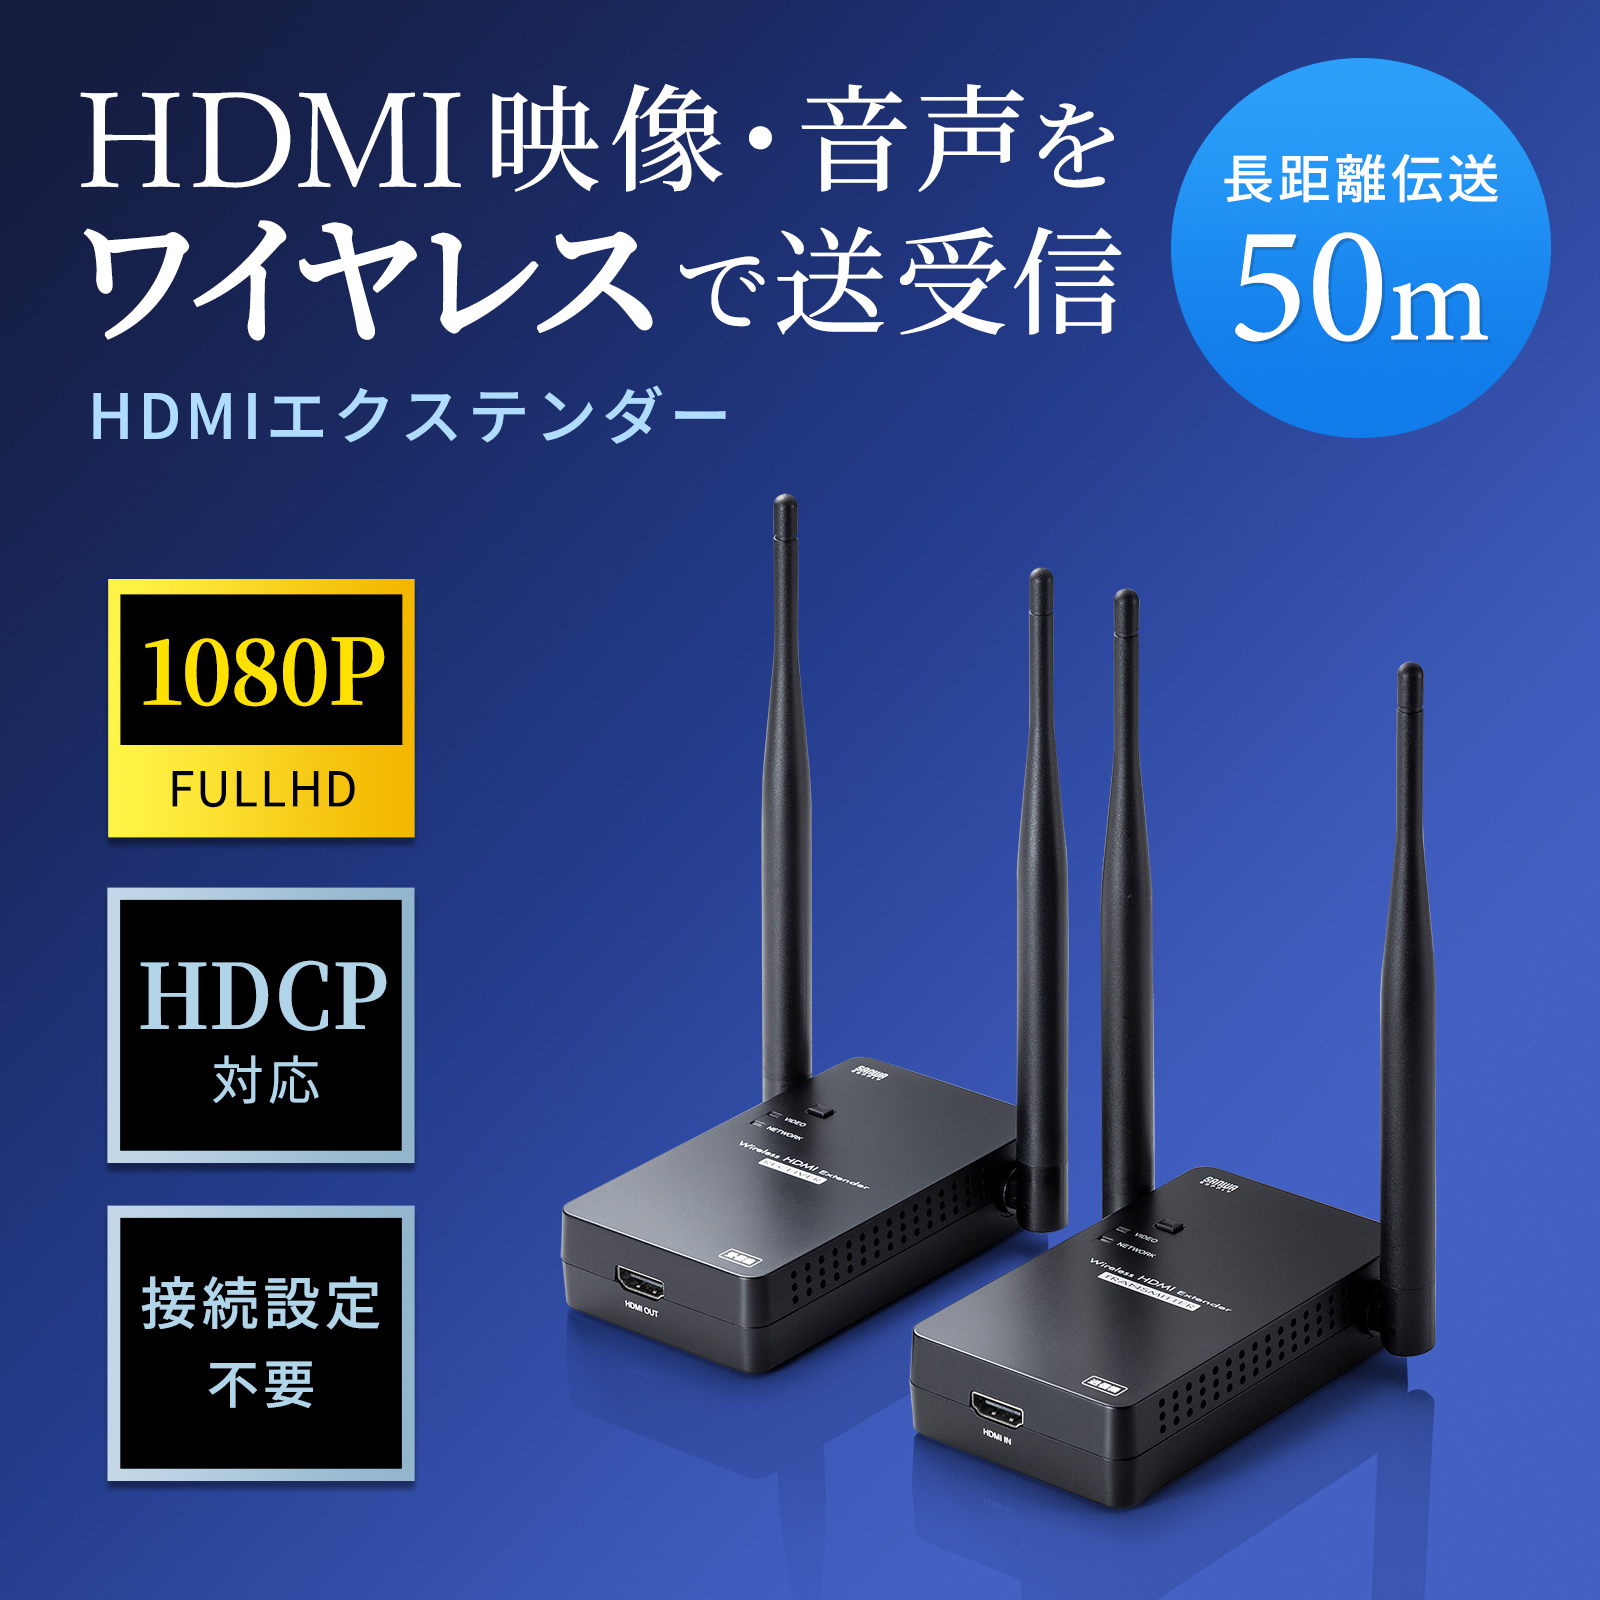 HDMI映像・音声をワイヤレスで送受信できるHDMIエクステンダーを発売